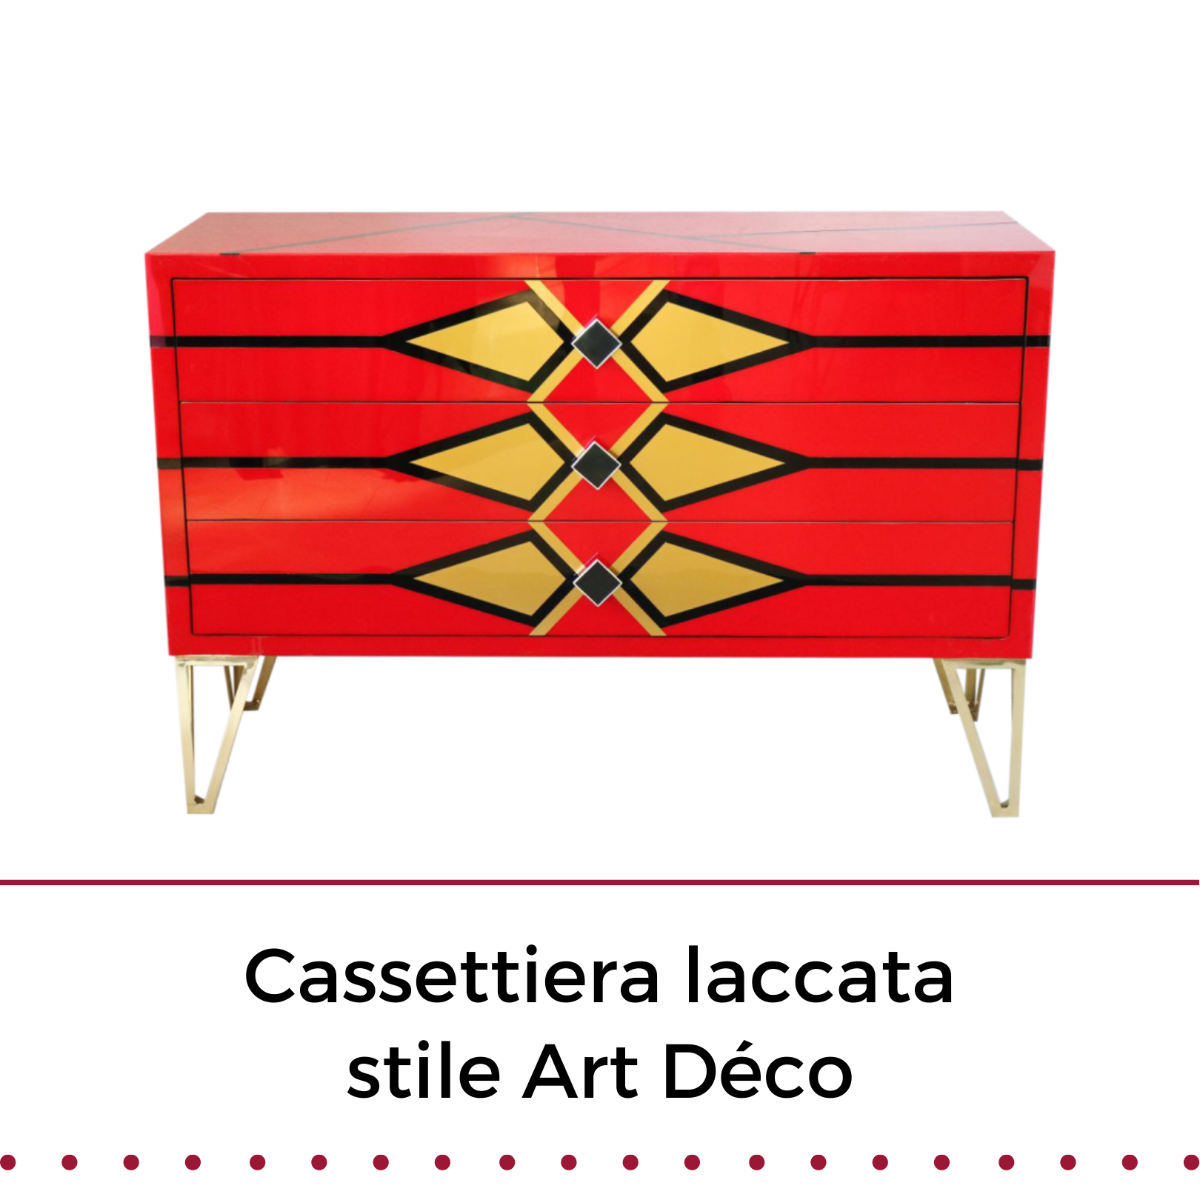 Cassettiera stile Art Déco laccata rossa